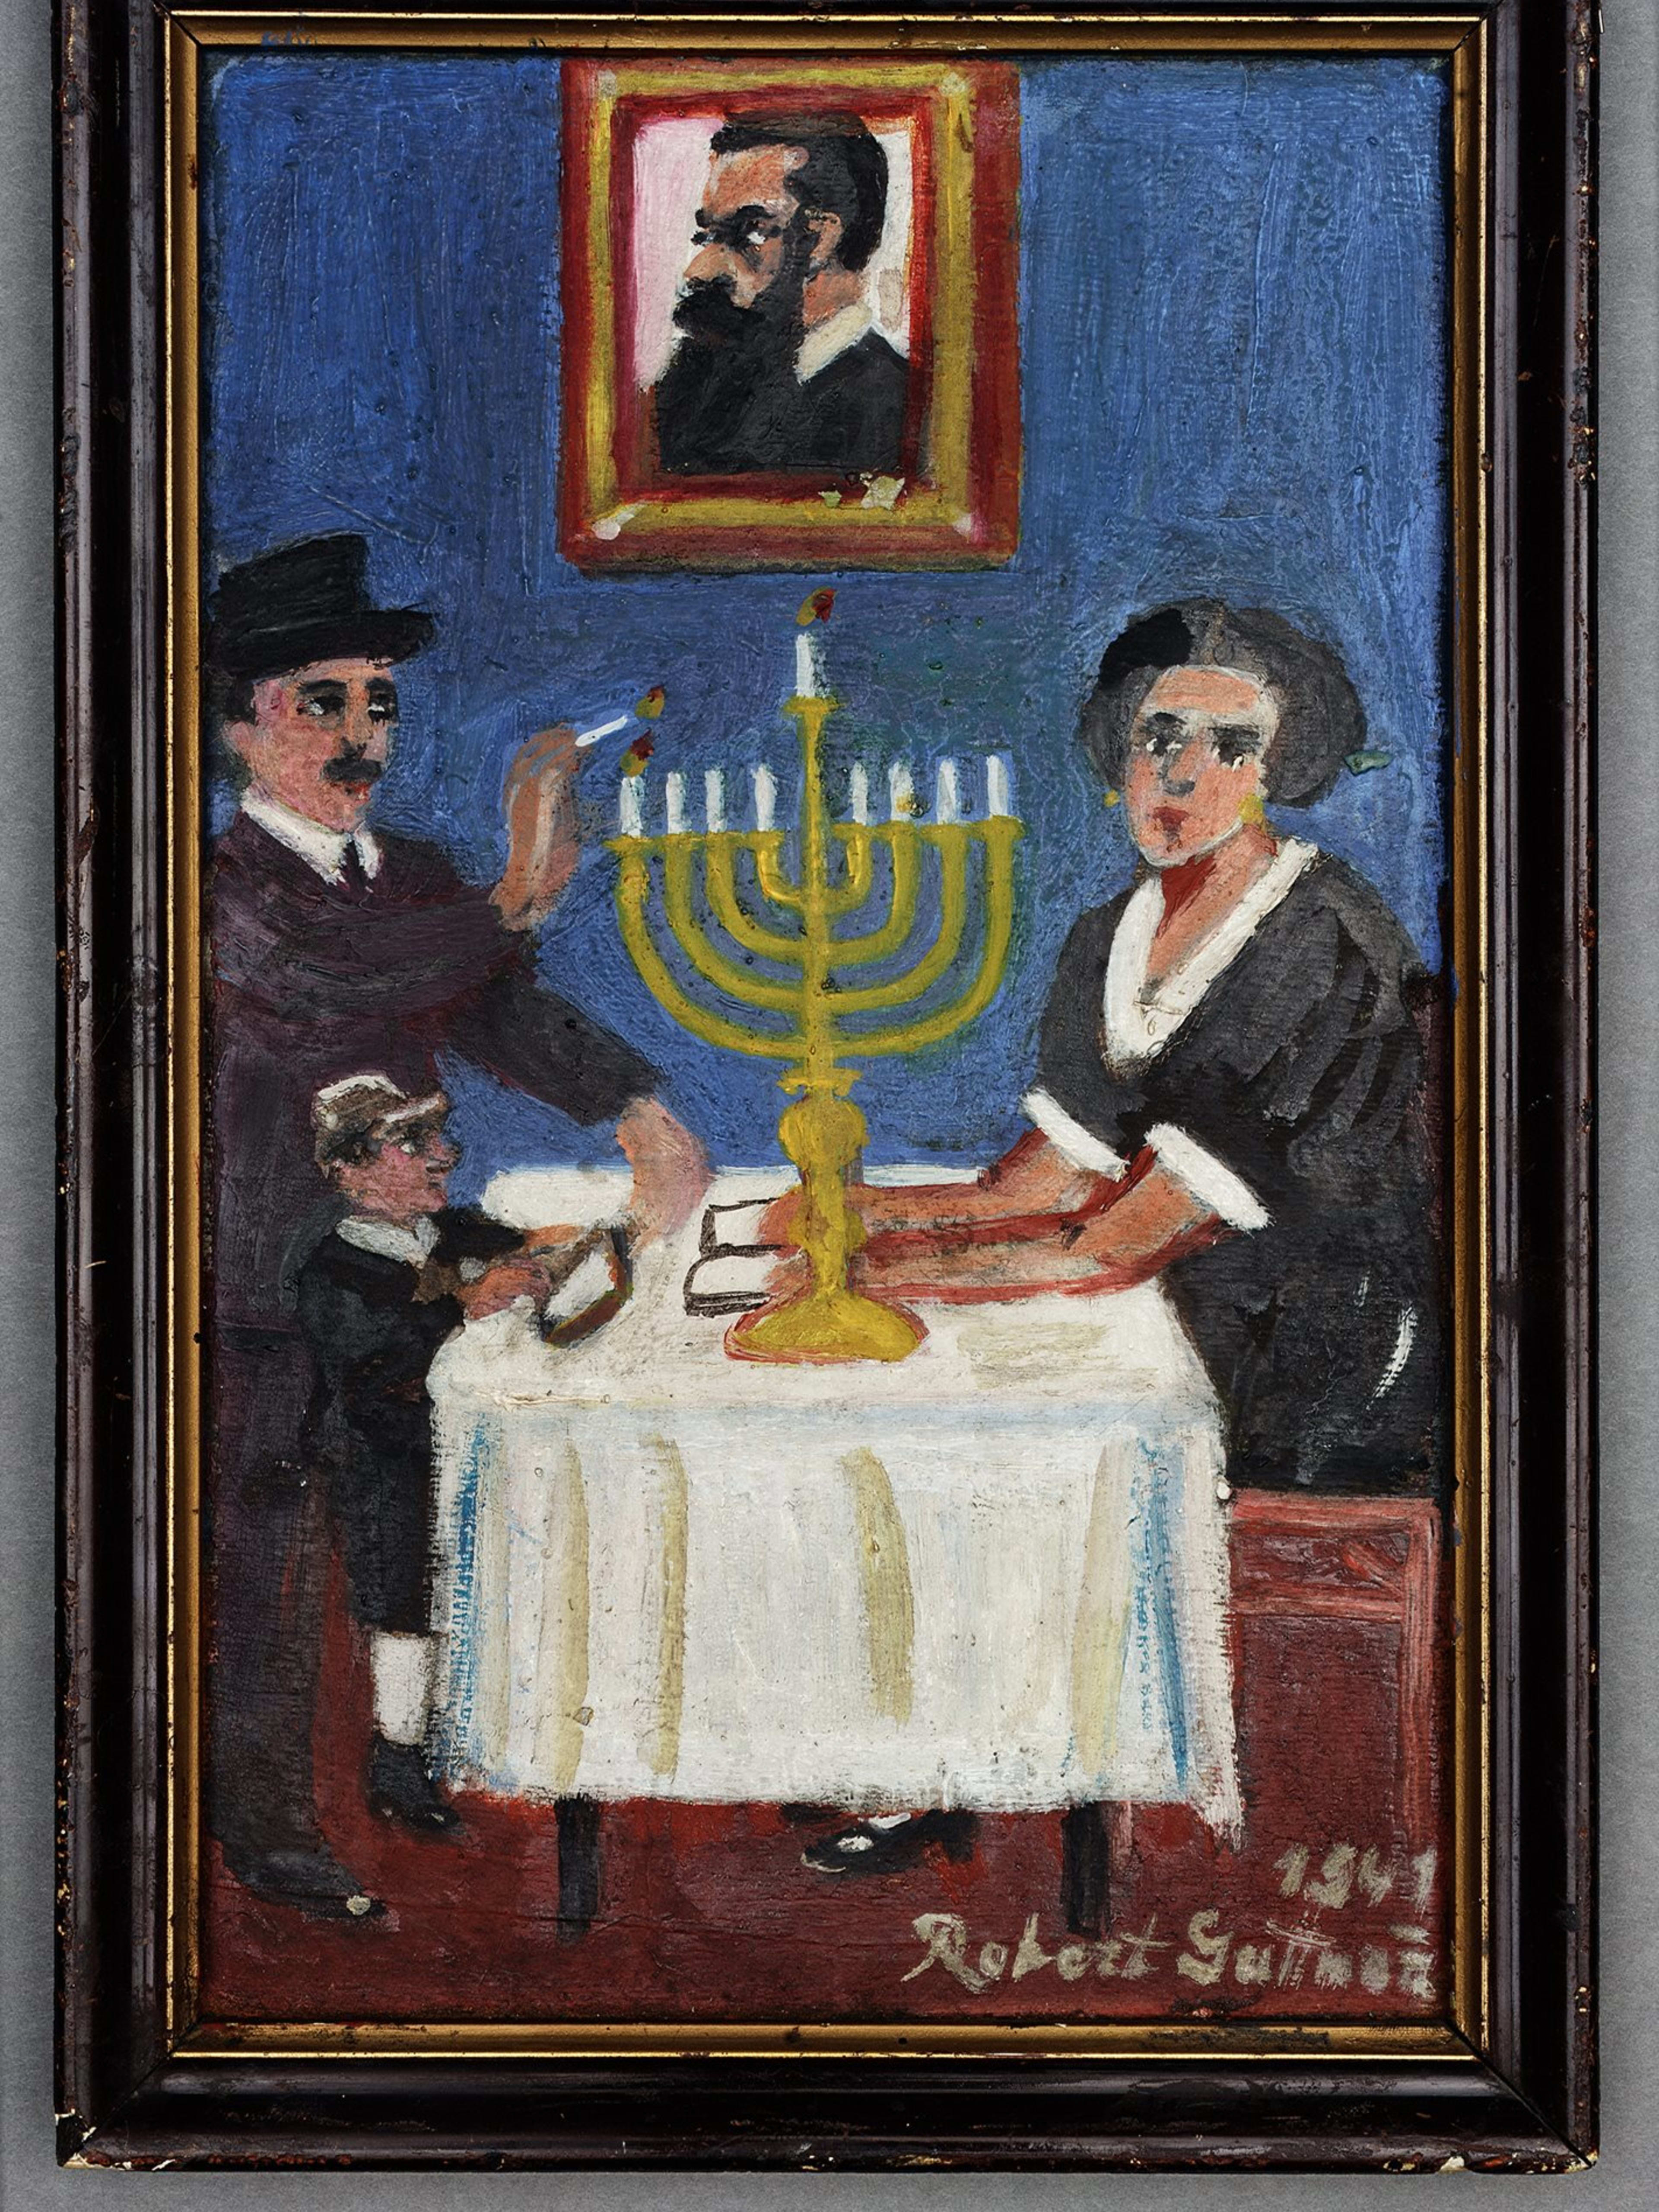 Robert Guttmann Gallery – Prague Jewish Quarter